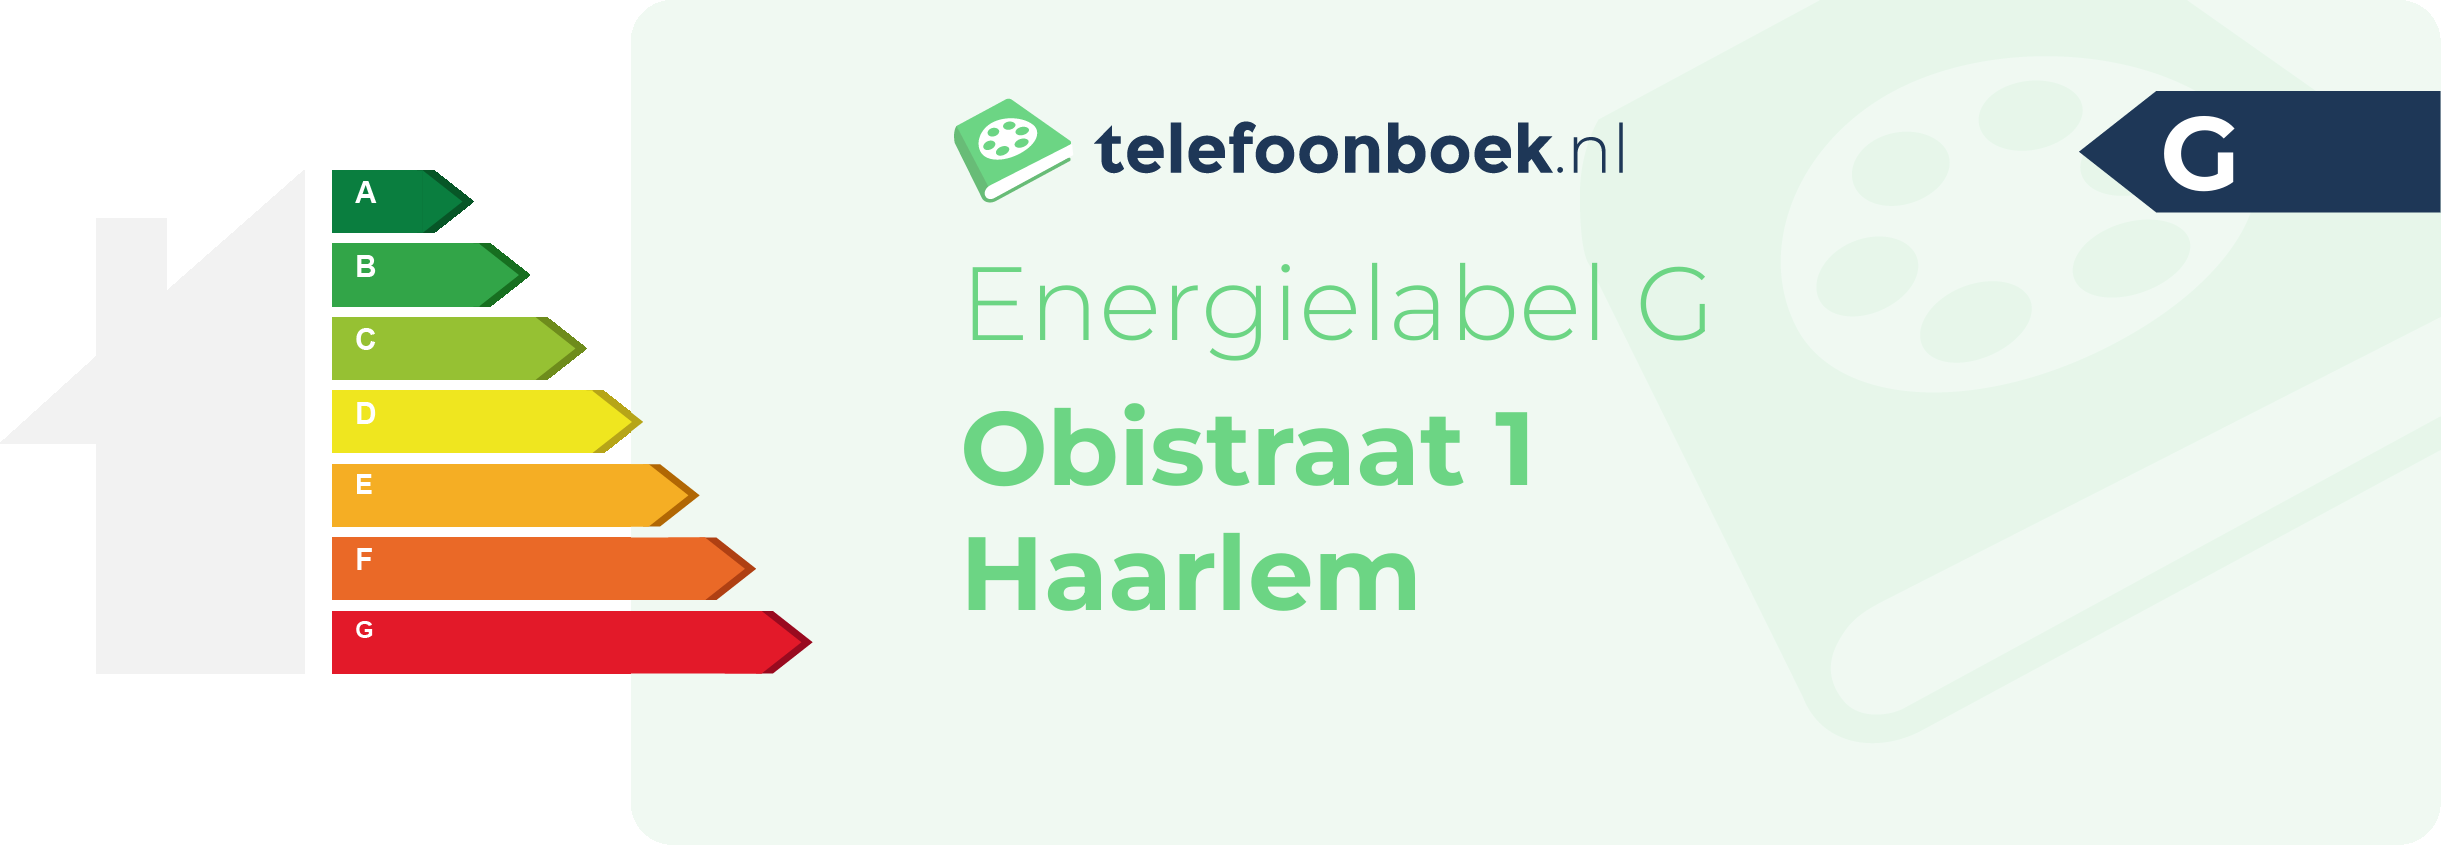 Energielabel Obistraat 1 Haarlem